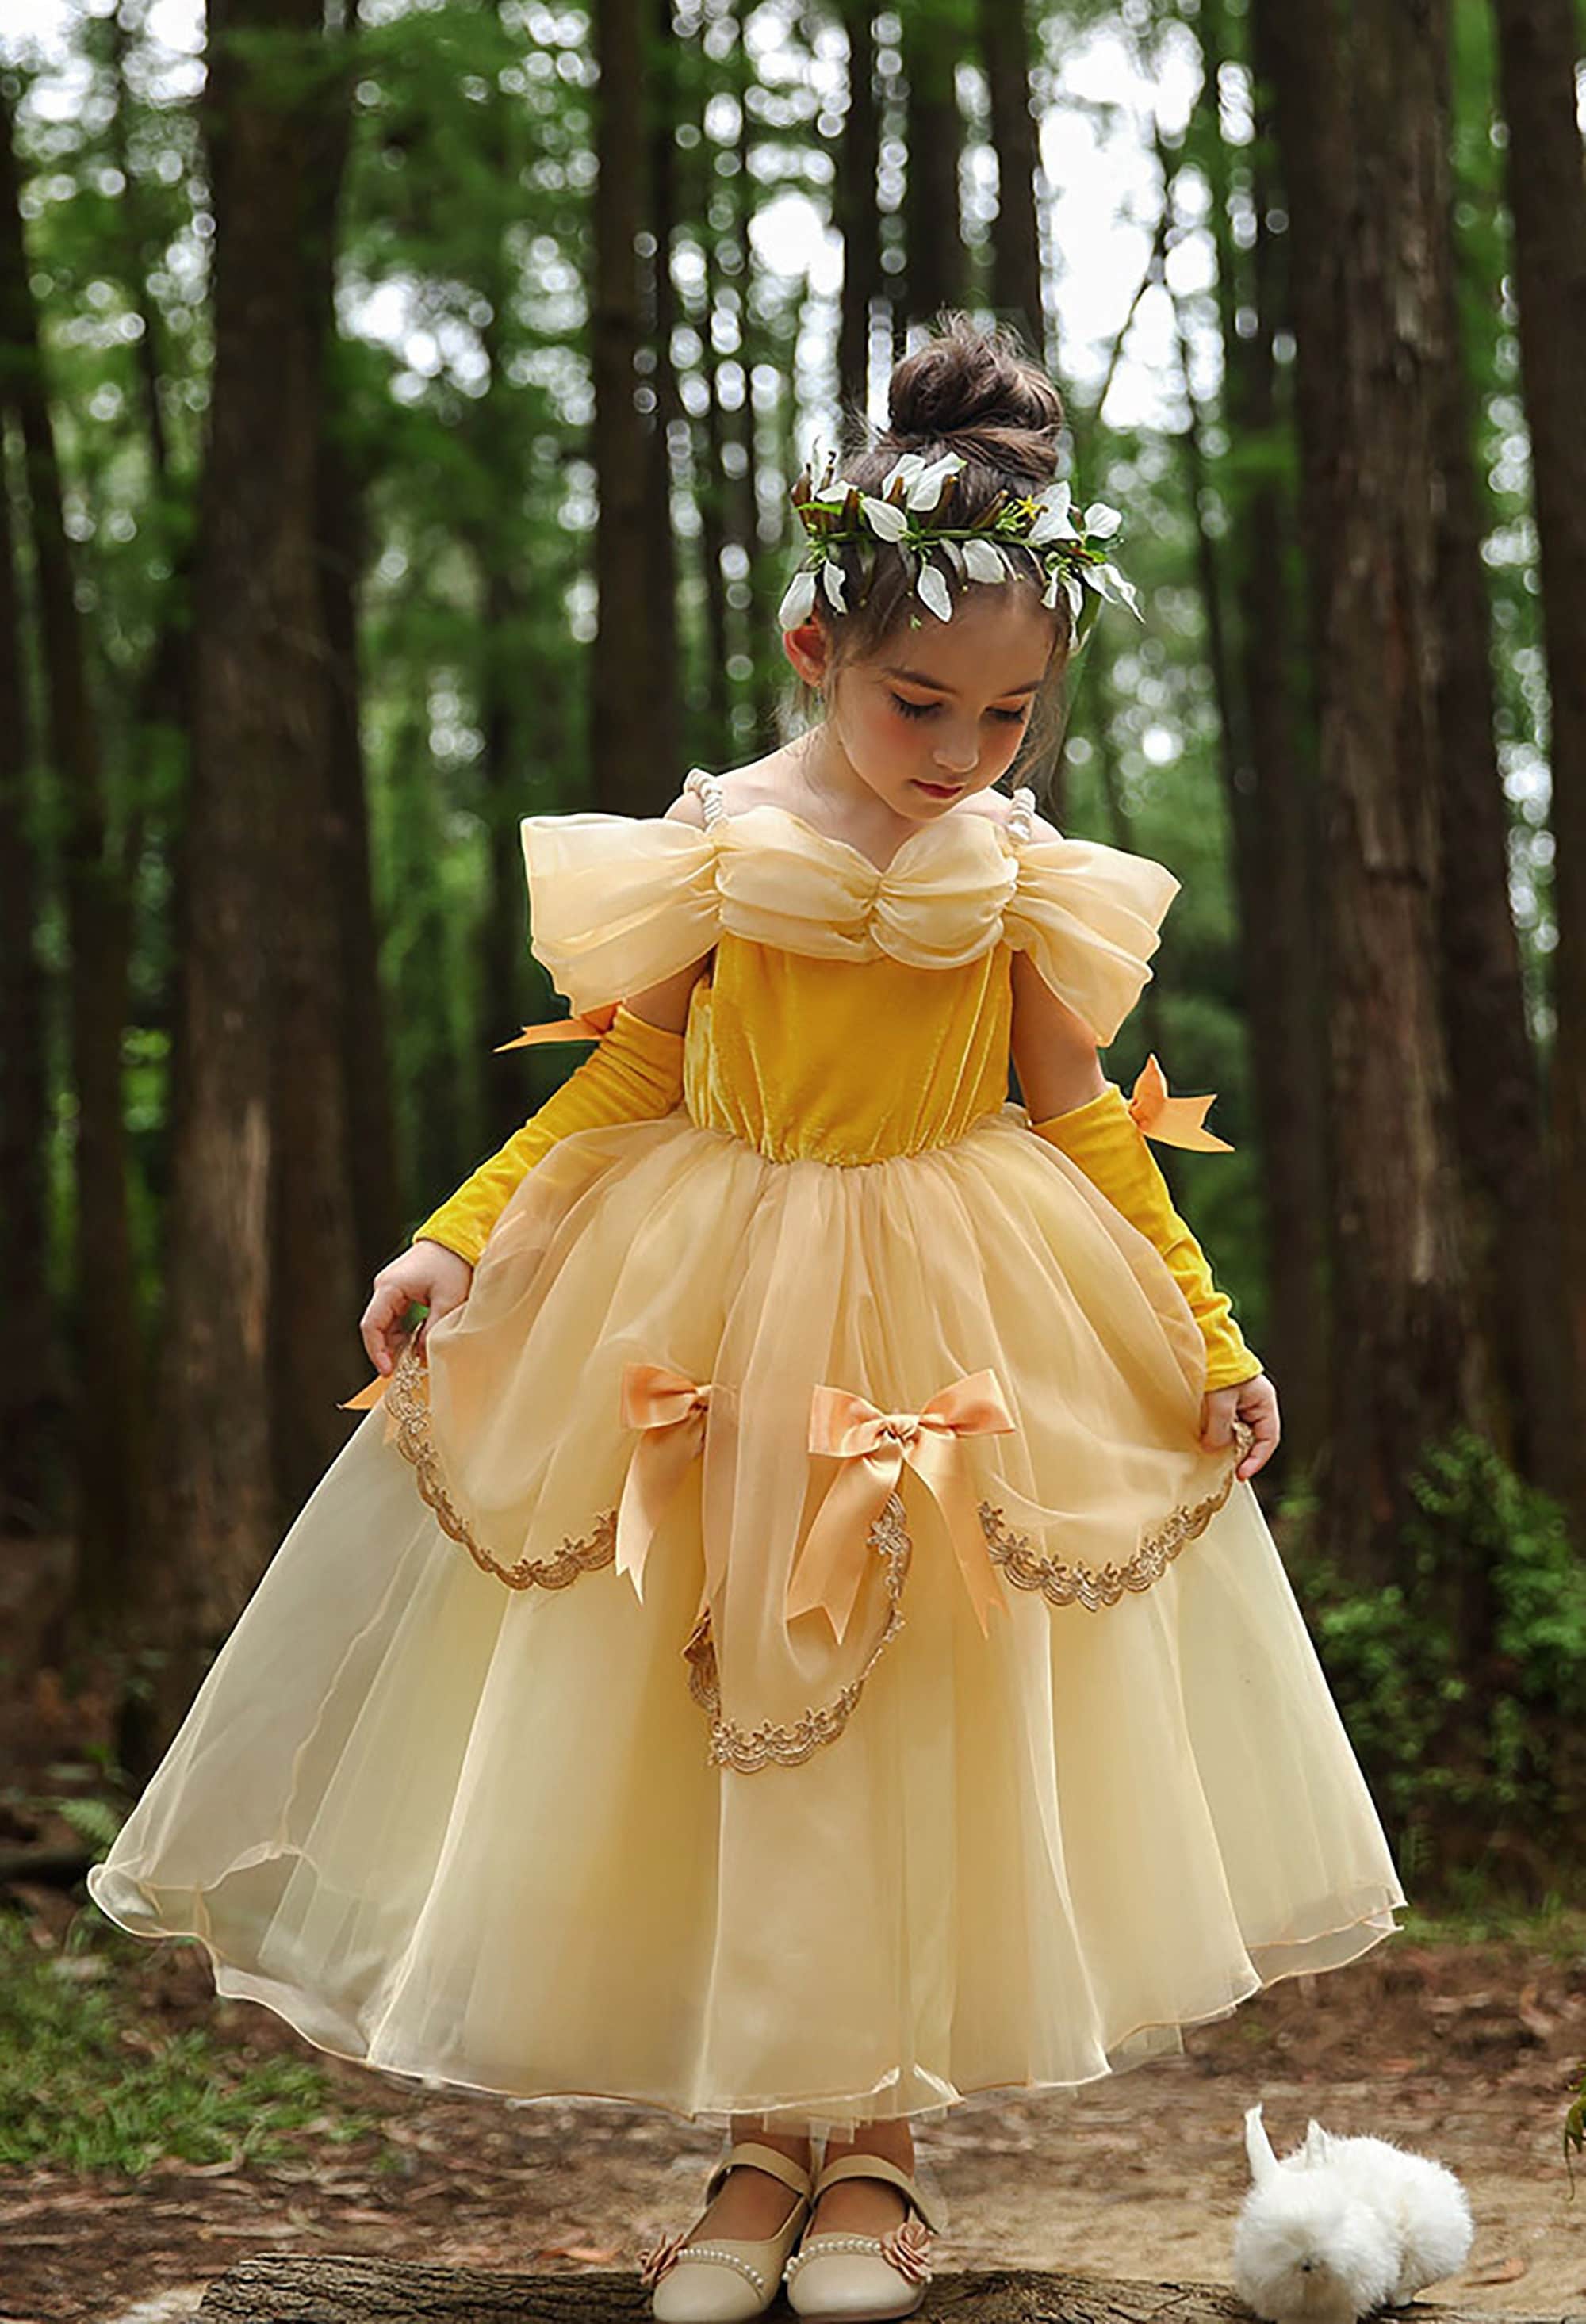 Belle inspired dress belle party beauty and the beast Kleding Meisjeskleding Verkleden belle costume belle dress 